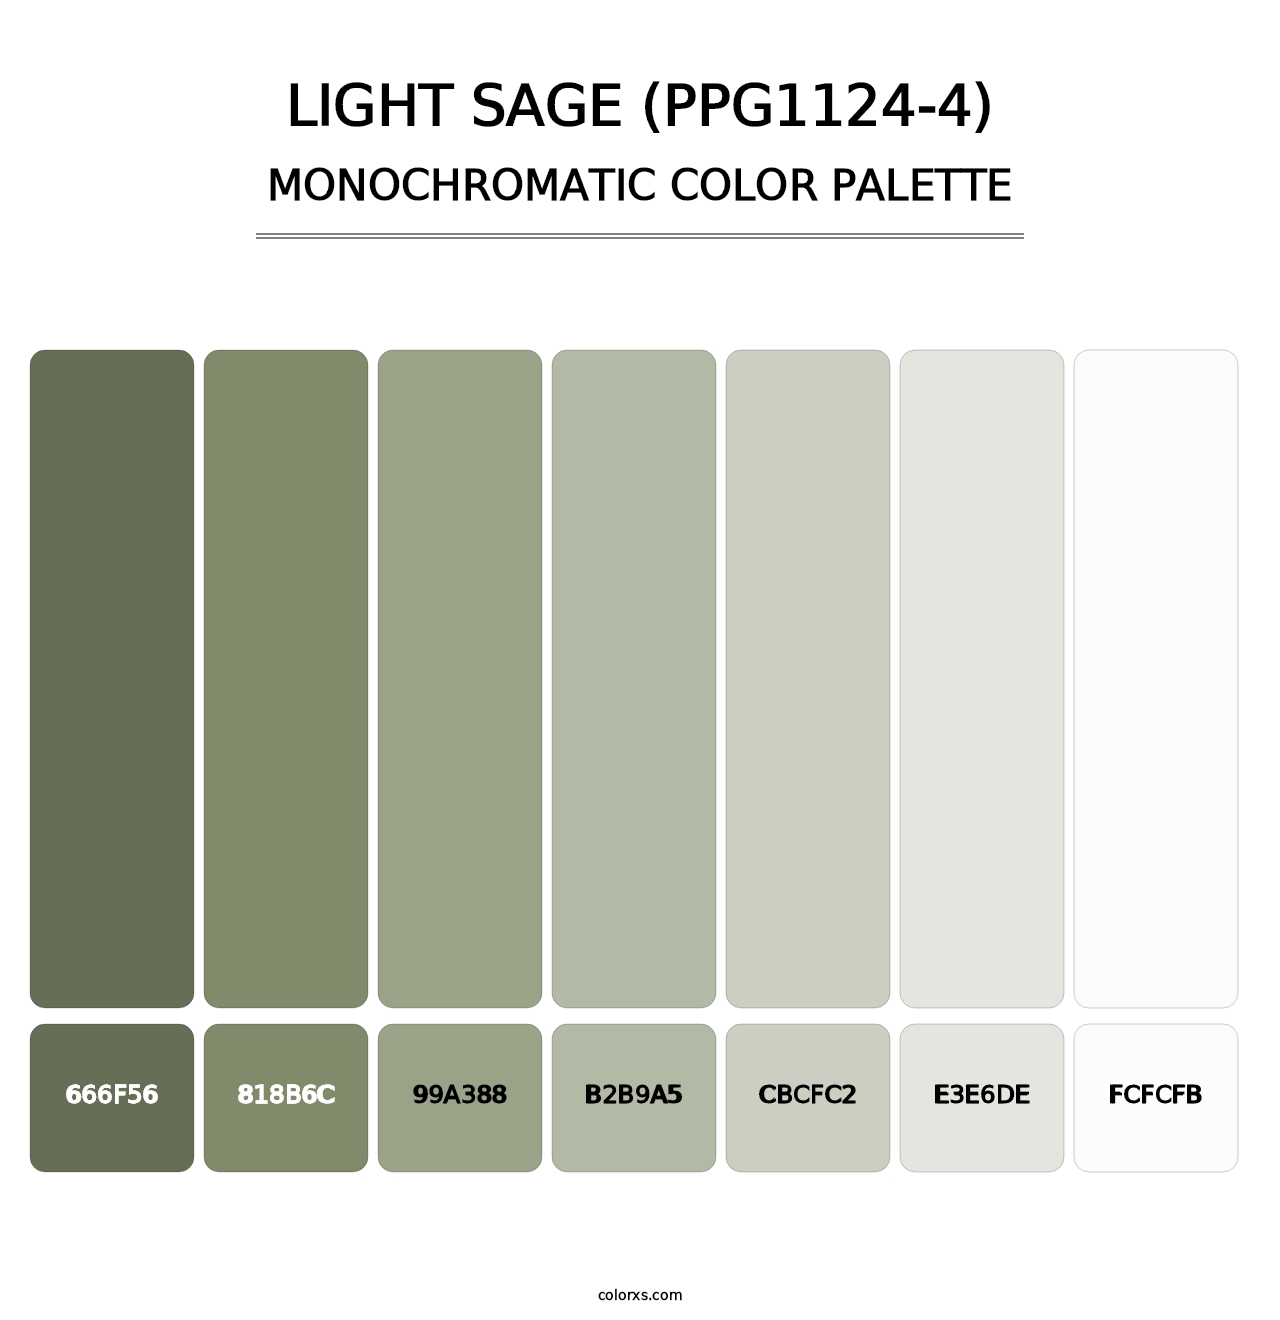 Light Sage (PPG1124-4) - Monochromatic Color Palette